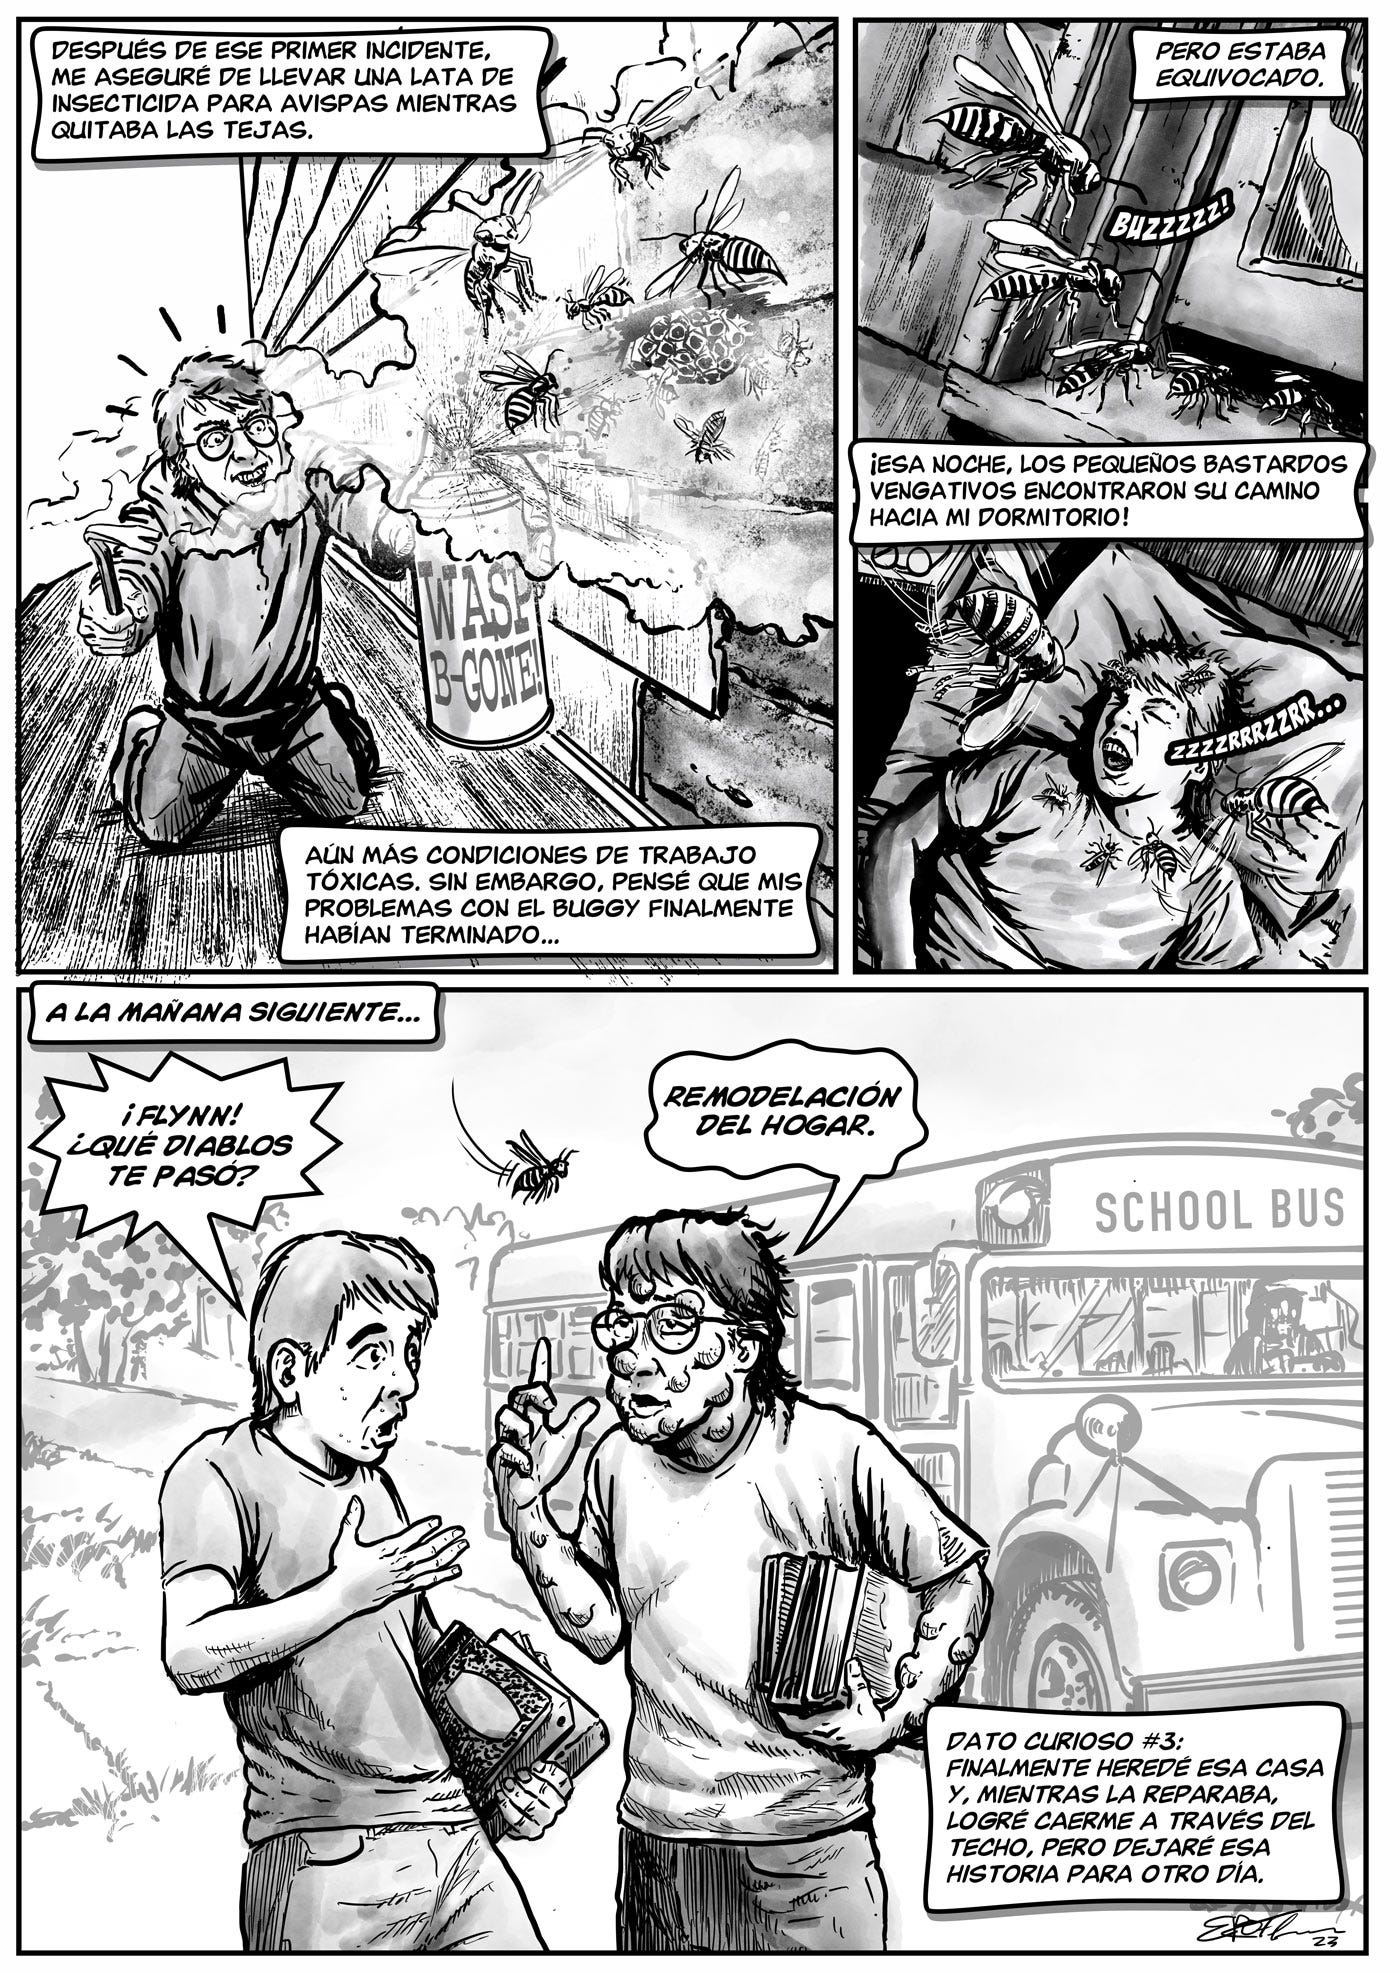 El Cuento de Avispas page 3 Comic by ER Flynn